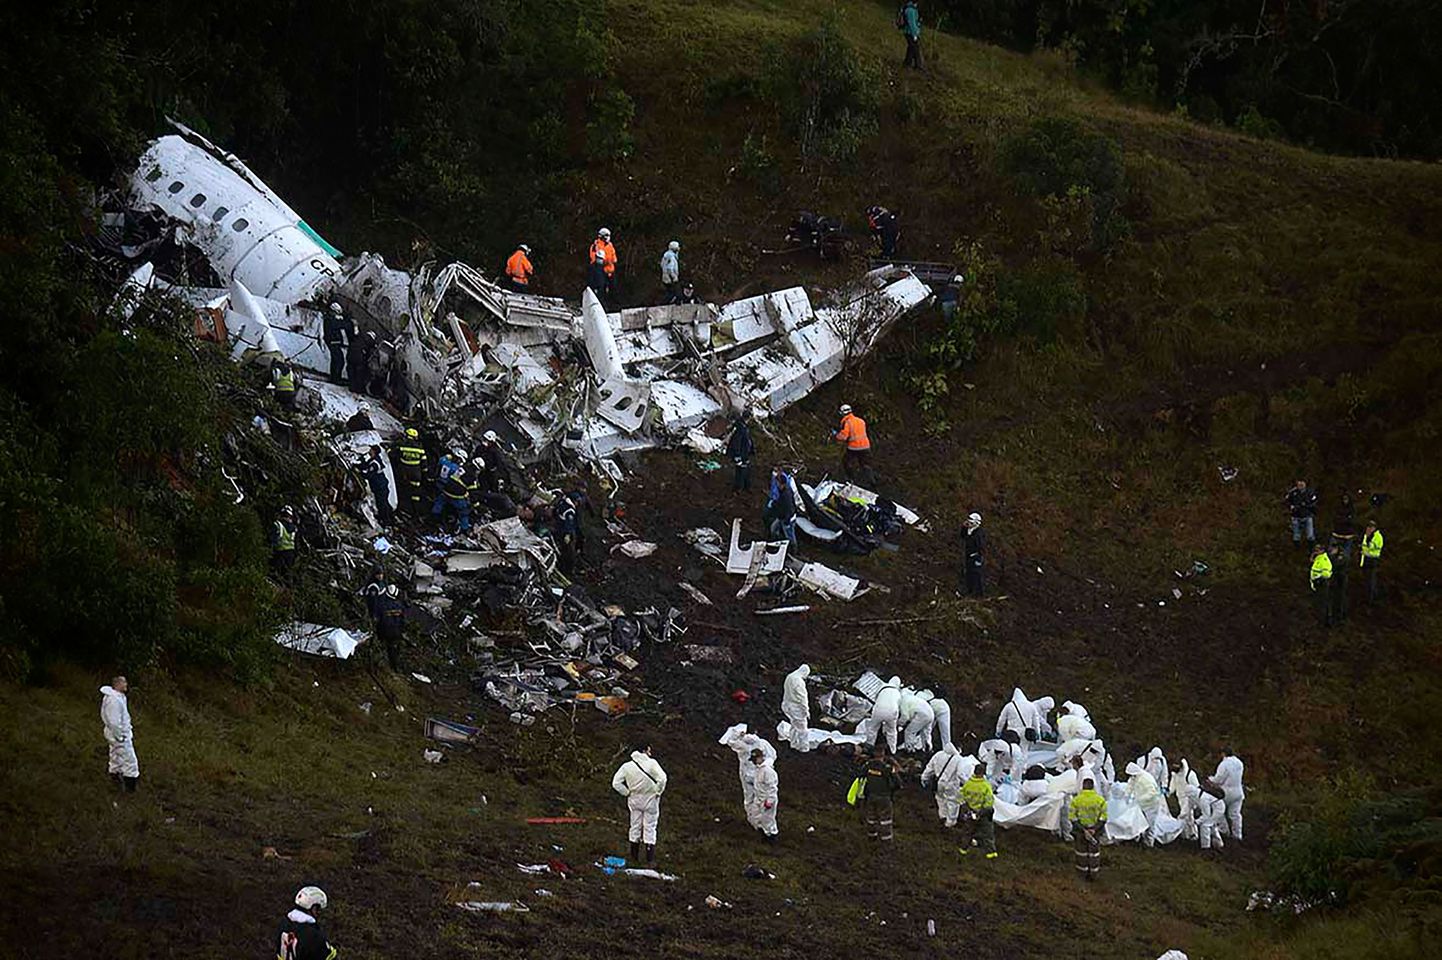 LaMia lennufirma lennuk kukkus kütuse lõppemise tõttu Kolumbias alla